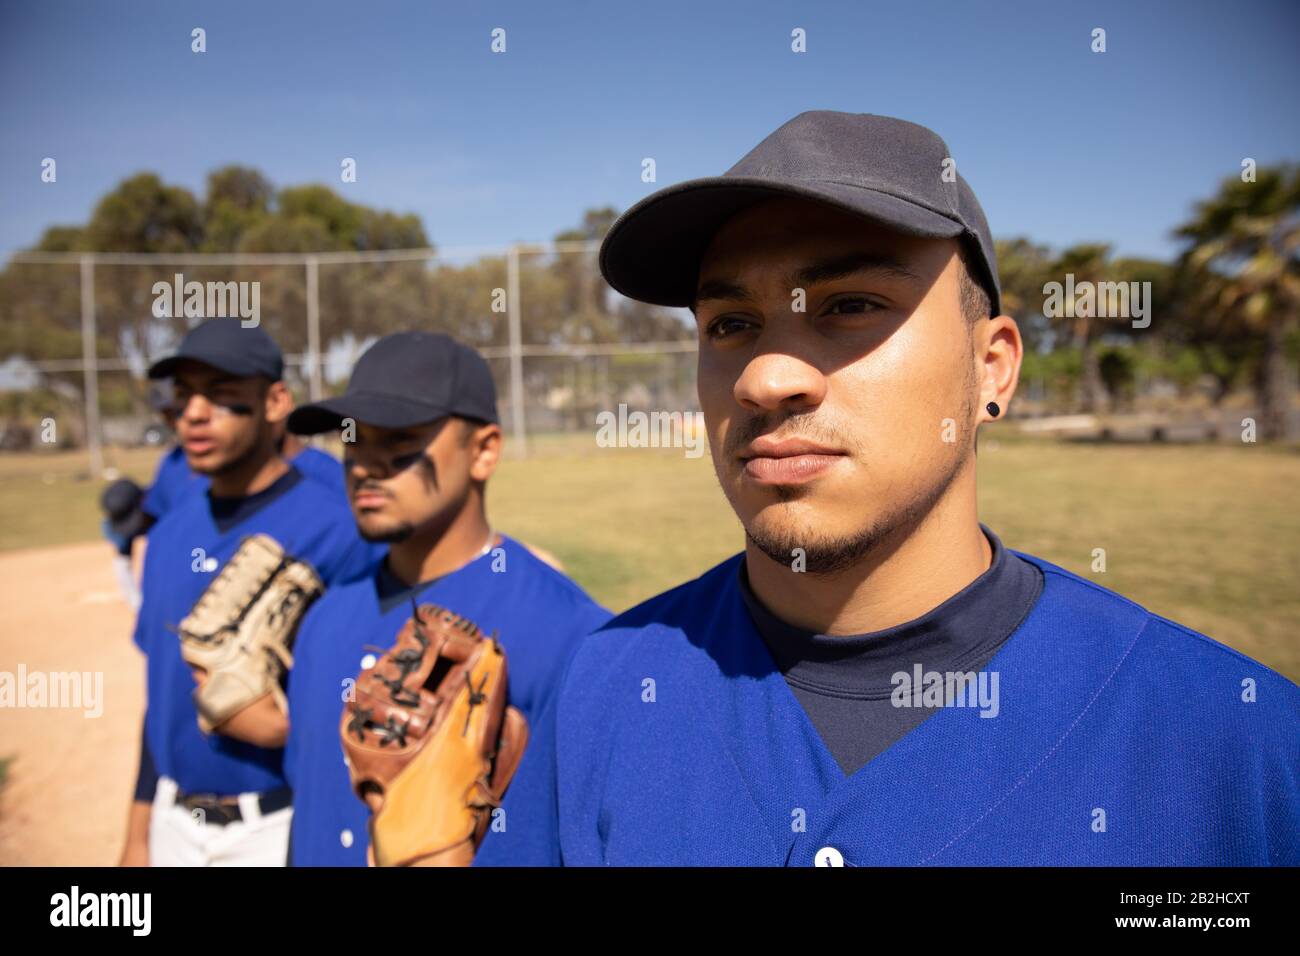 Joueurs de baseball debout en ligne Banque D'Images